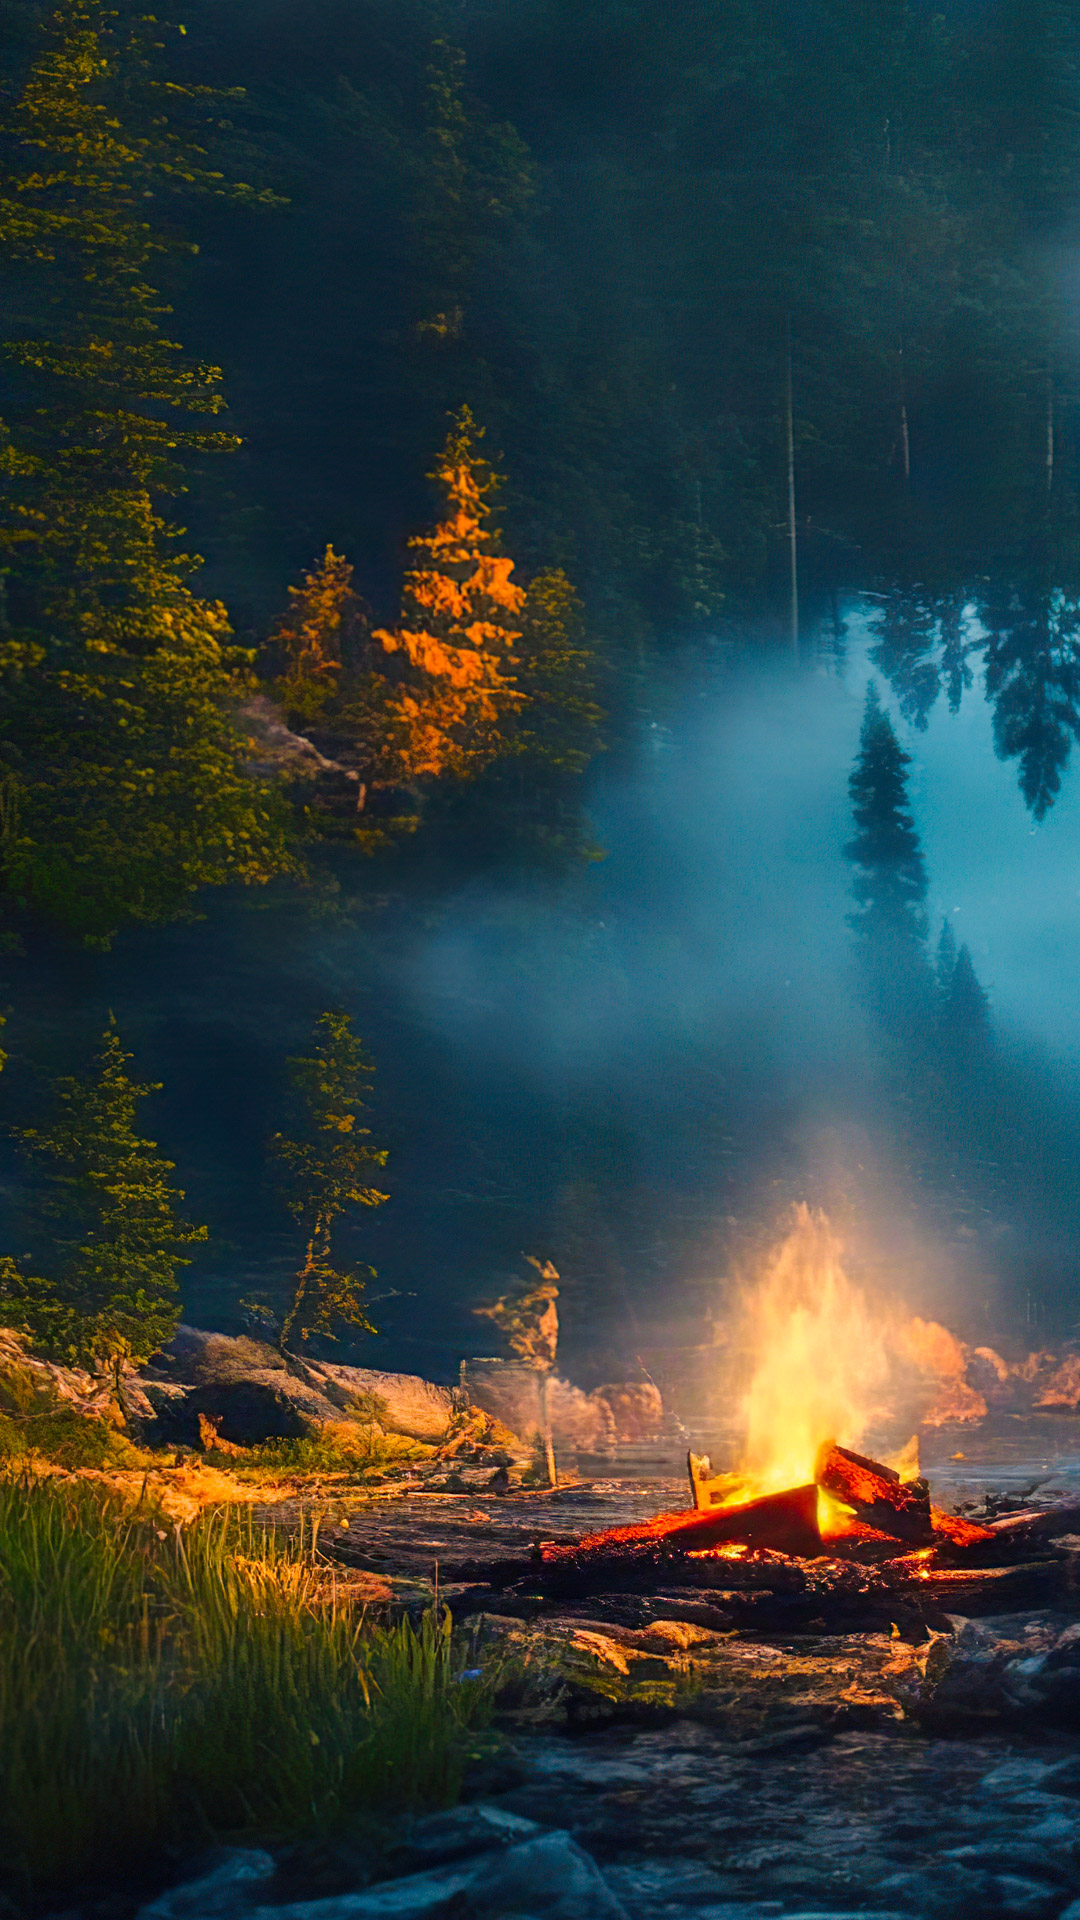 Perdez-vous dans la sérénité avec notre fond d'écran cool de paysages, dépeignant un campement paisible au bord d'un lac avec un feu de camp vacillant, entouré d'une nature boisée et sombre.